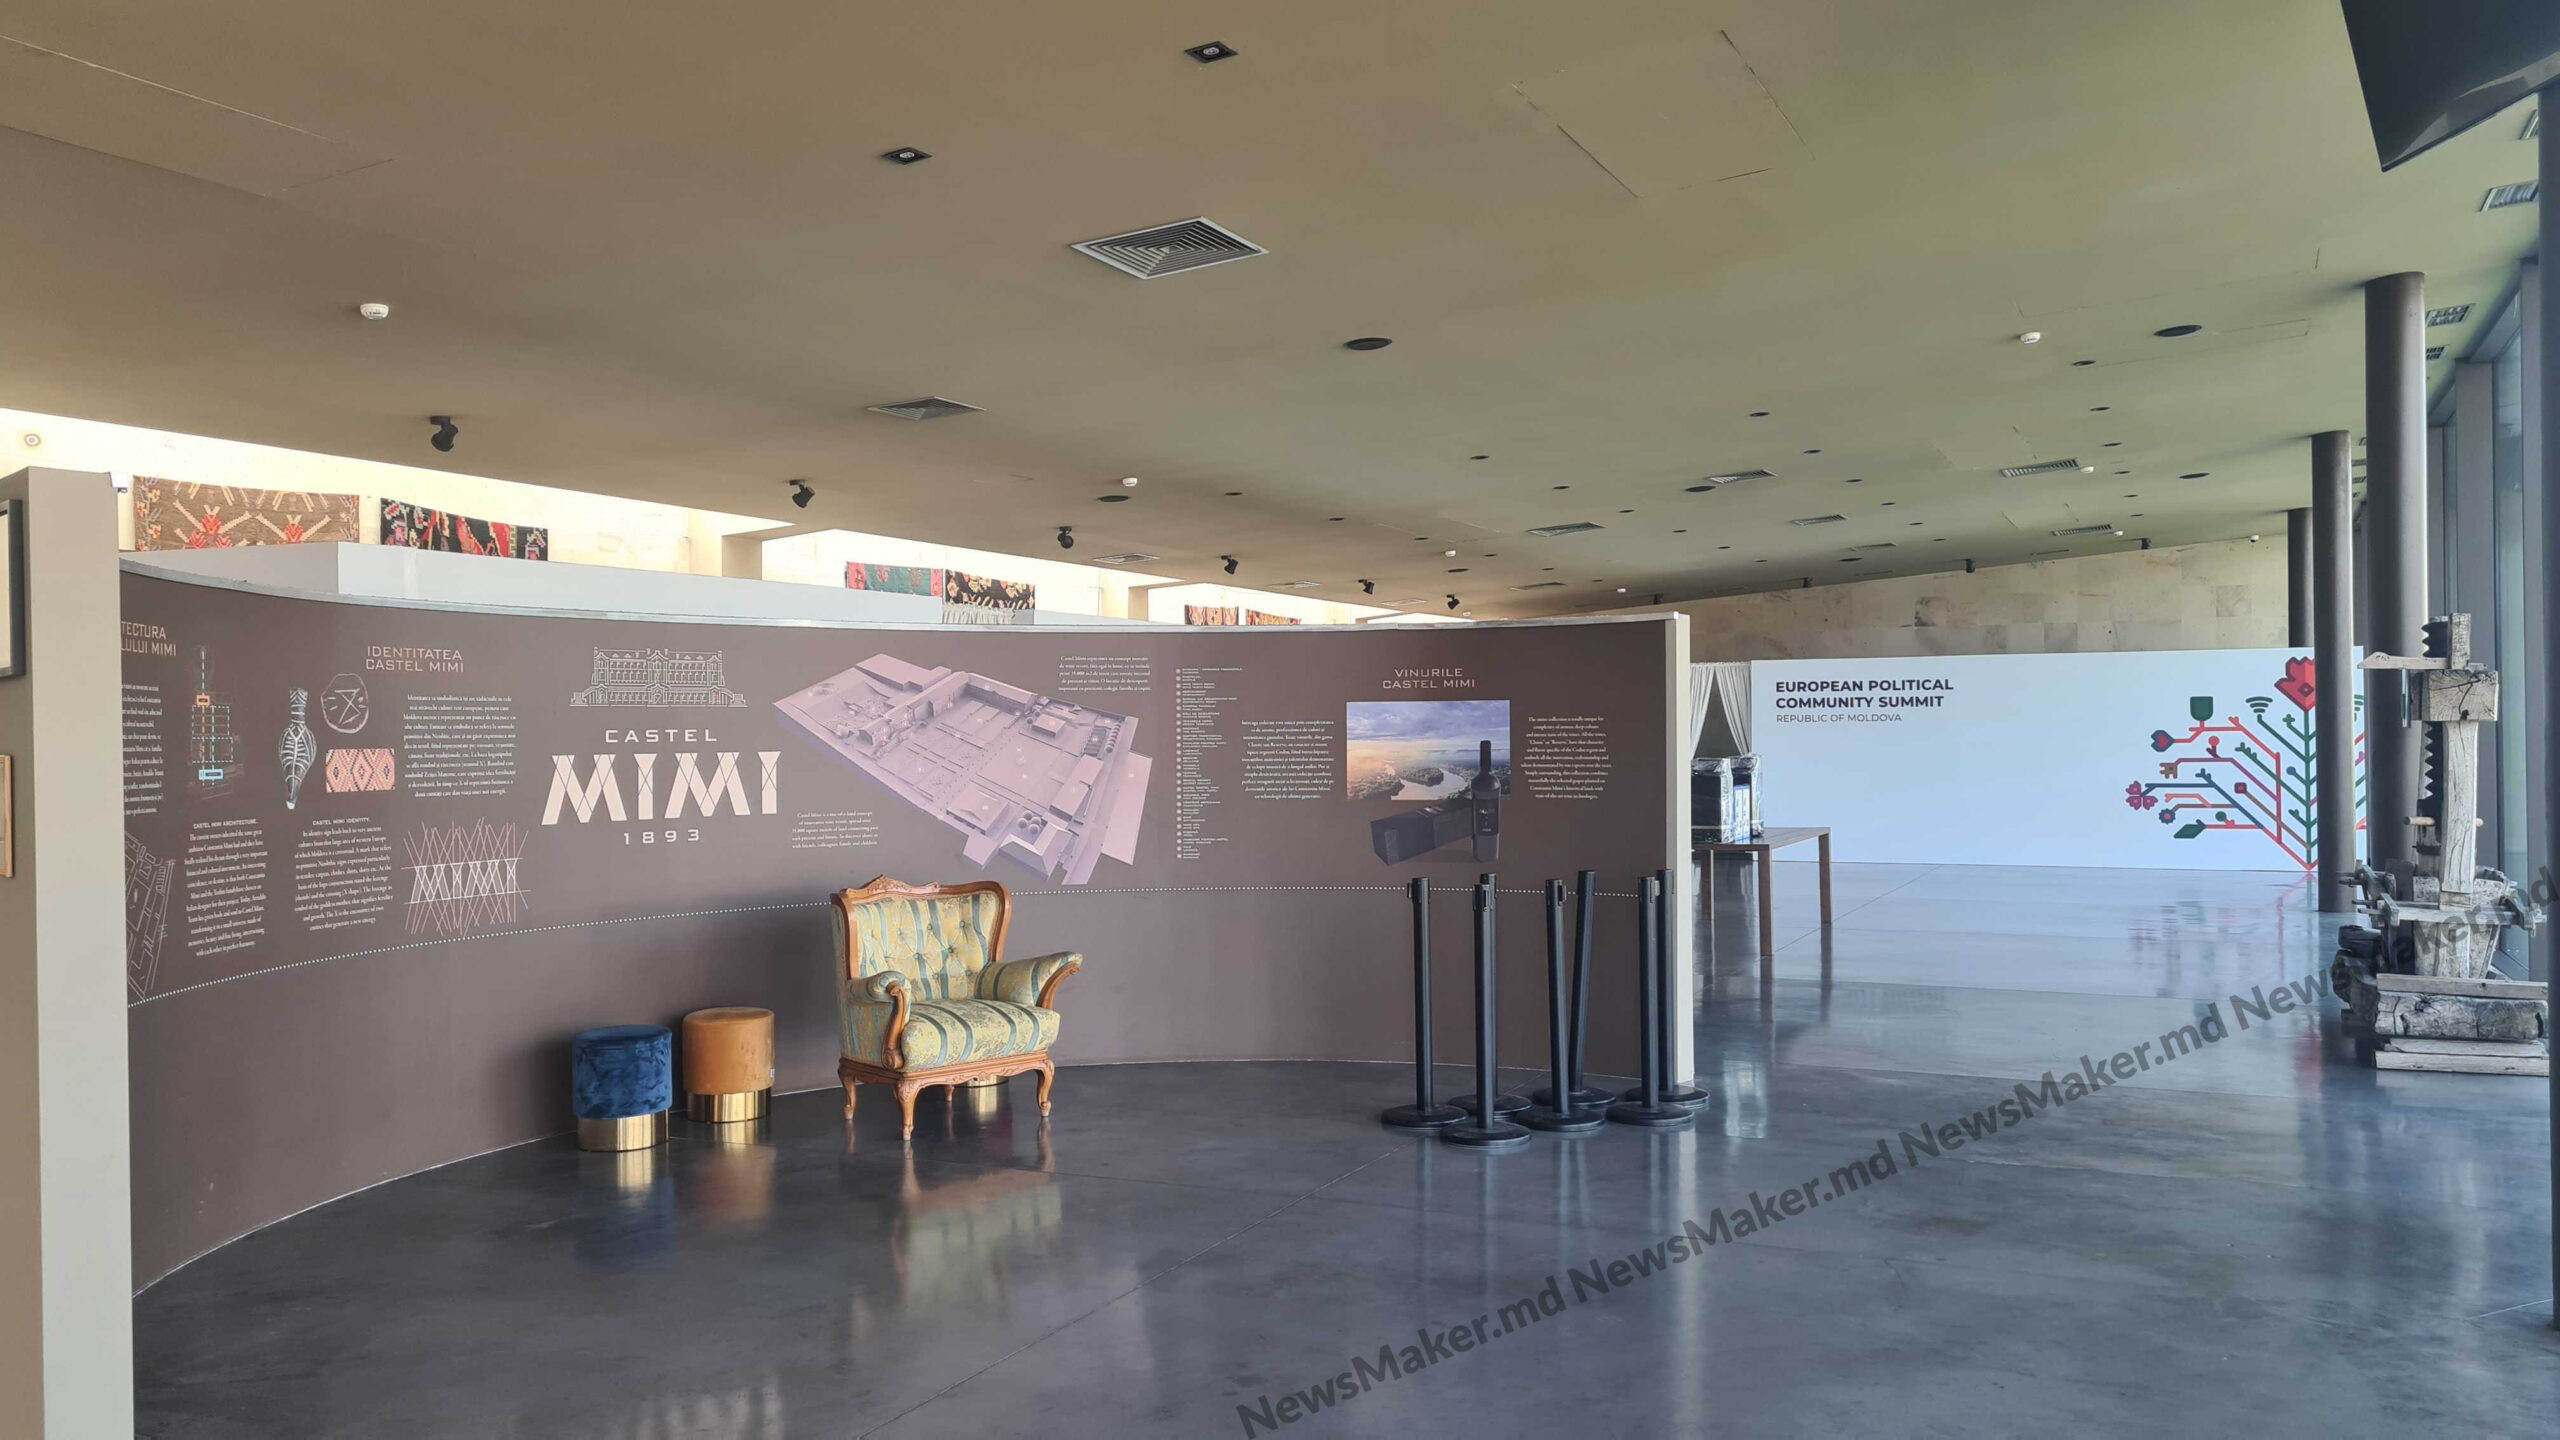 Covor roșu și WC-uri mobile: Cum arată Castelul Mimi cu doar câteva ore înainte de începerea summitului